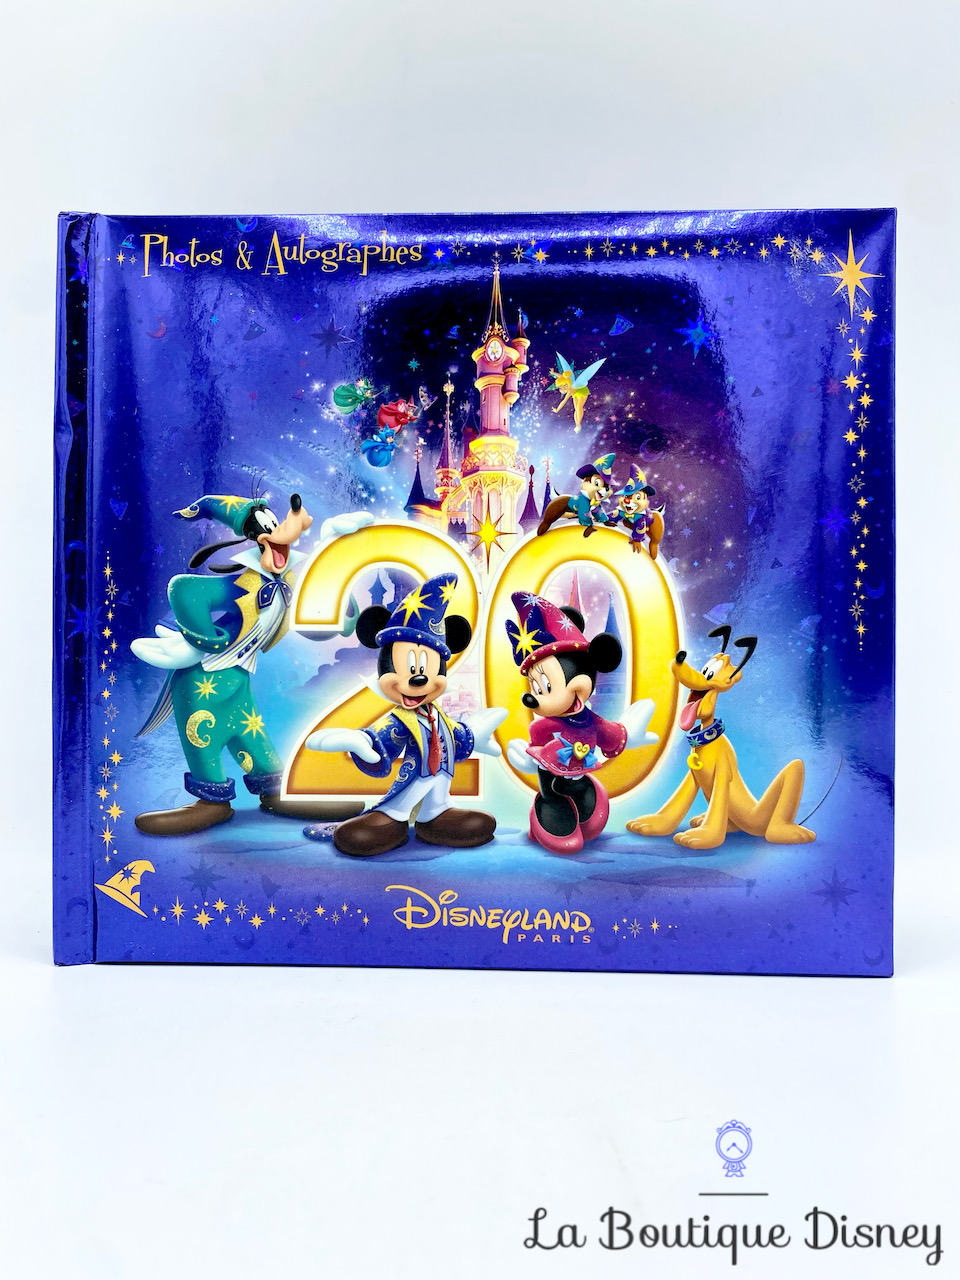 Carnet Photos Autographes Mickey Minnie 20ème anniversaire Disneyland Paris 20 ans Disney note cahier